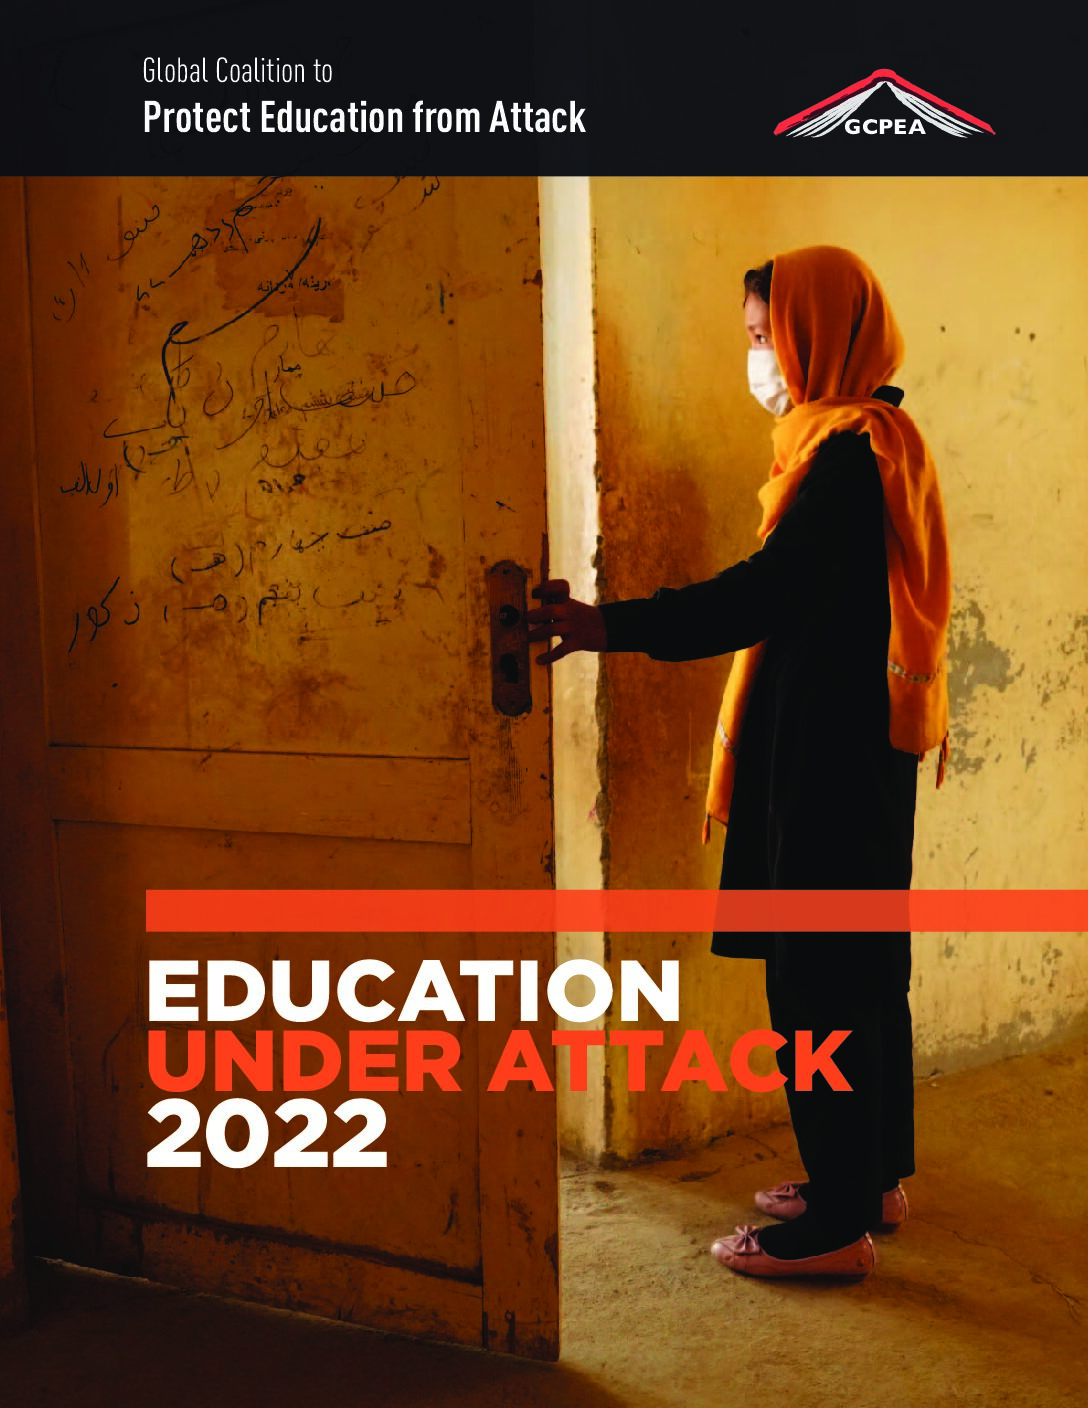 Education under attack 2022